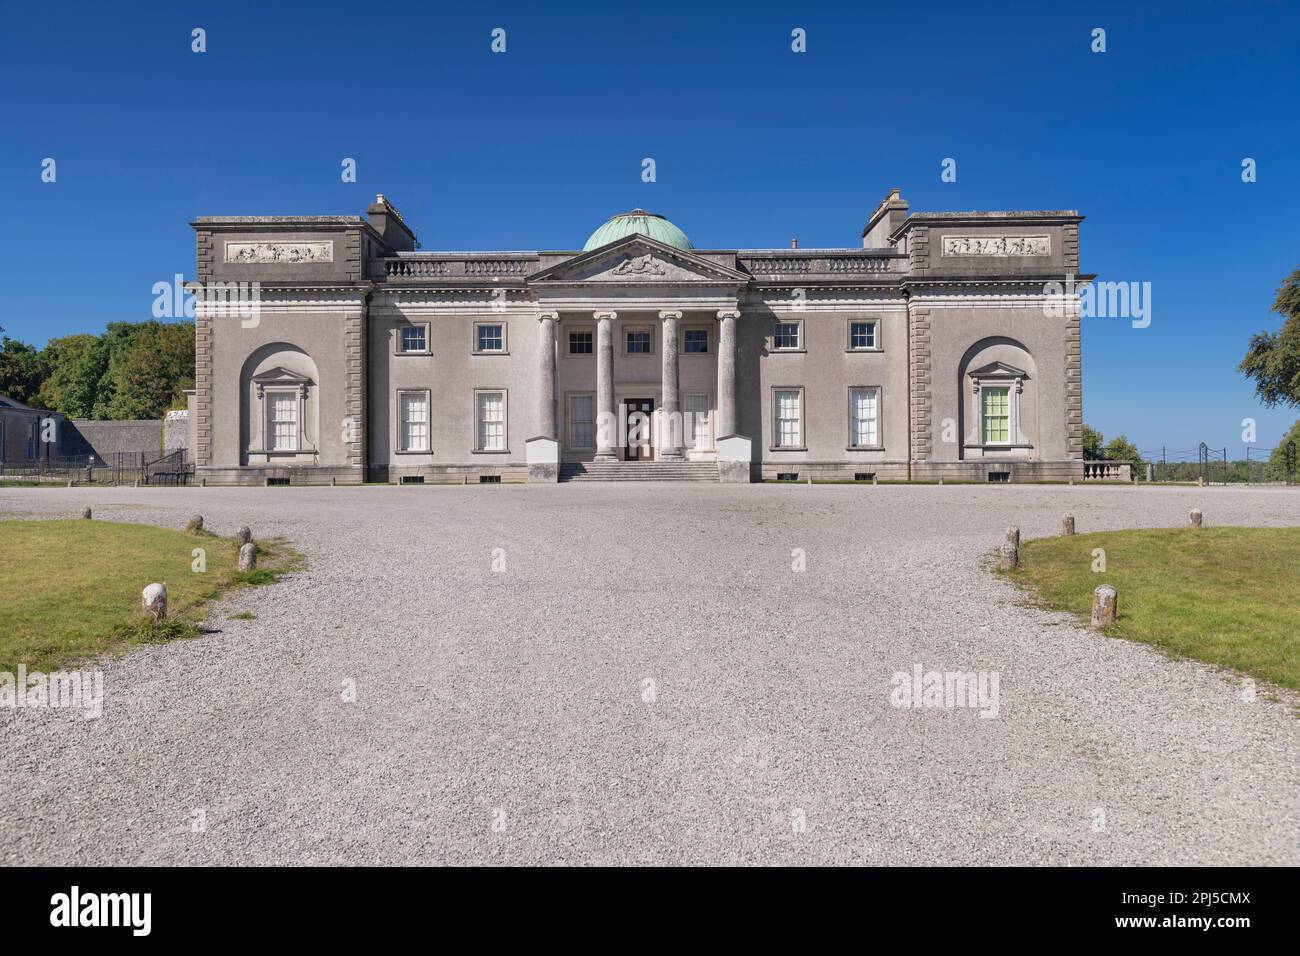 Irland, County Laois, Emo Court, die Fassade des Hauses mit dem Weg dorthin, Emo Court ist ein typisches neoklassizistisches Herrenhaus, das von t entworfen wurde Stockfoto